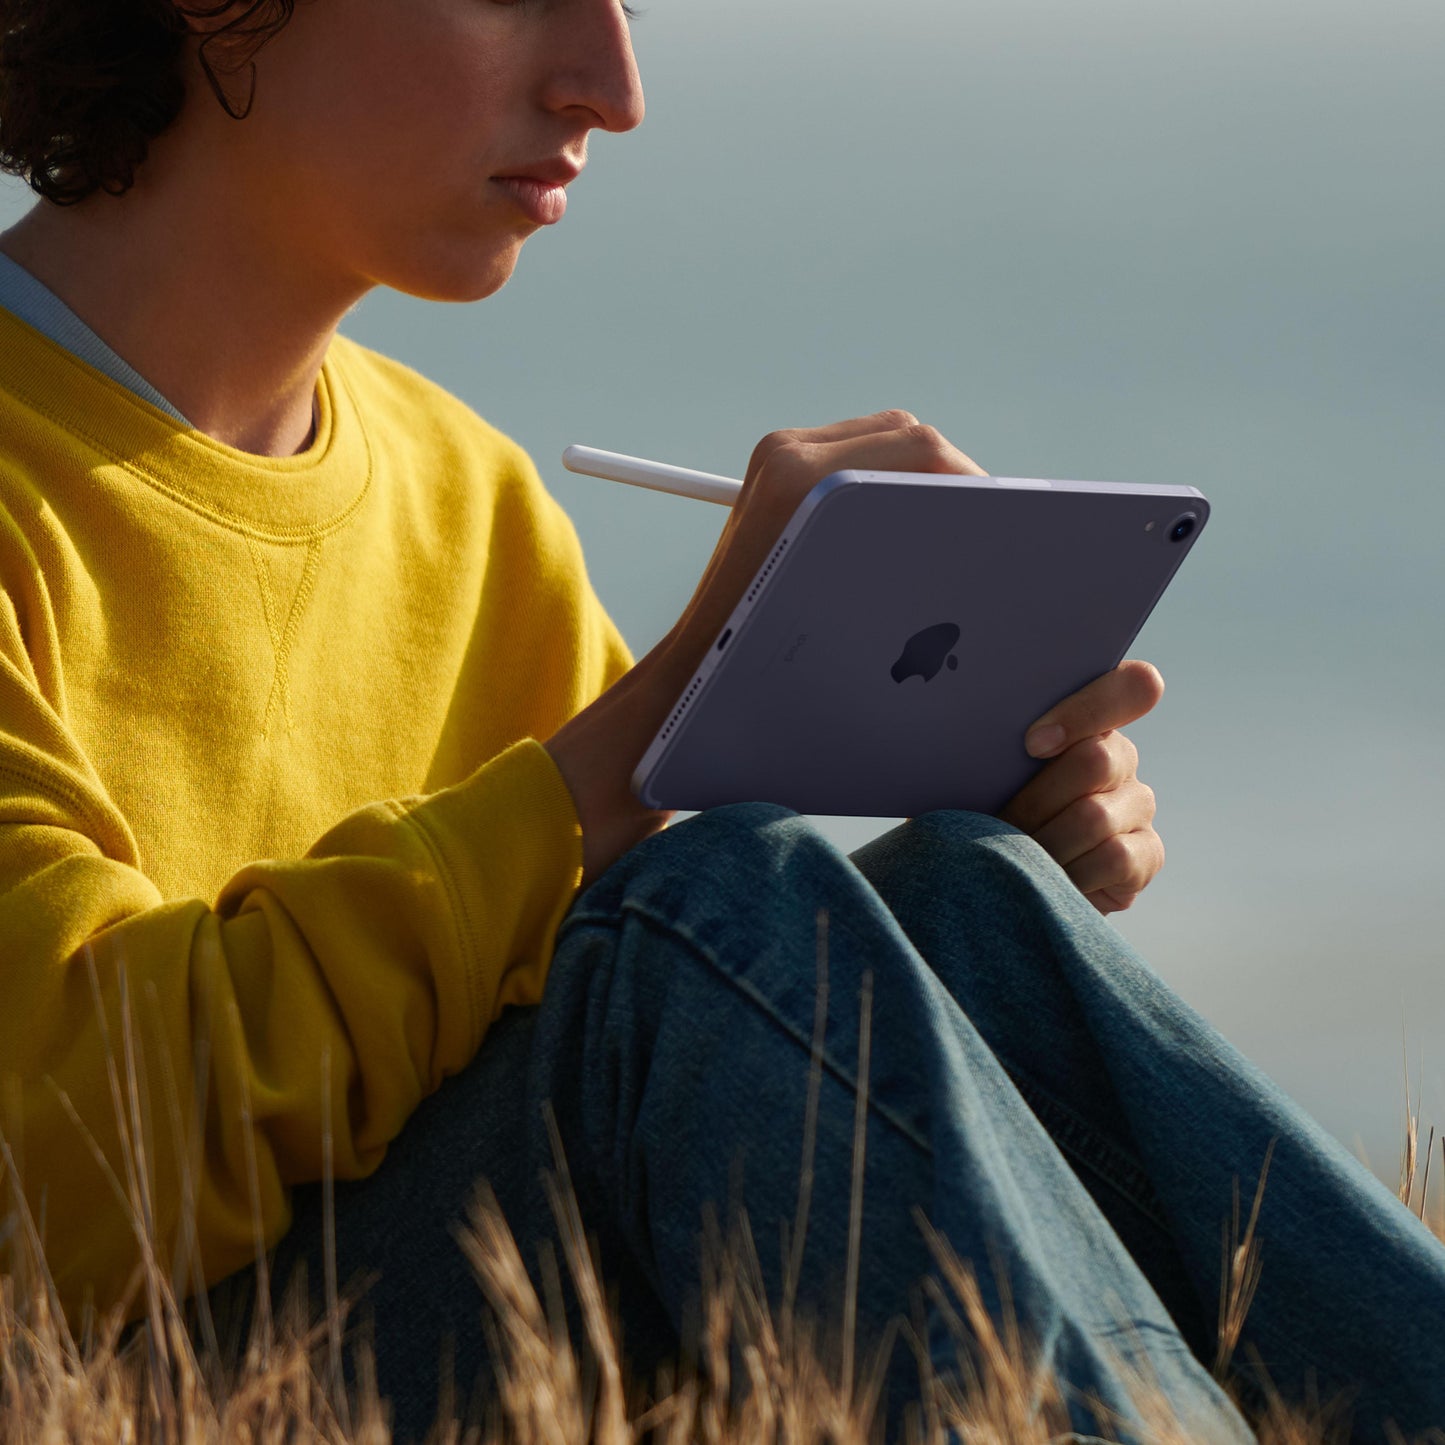 iPad mini Wi-Fi + Cellular 64GB - Purple (6th generation)